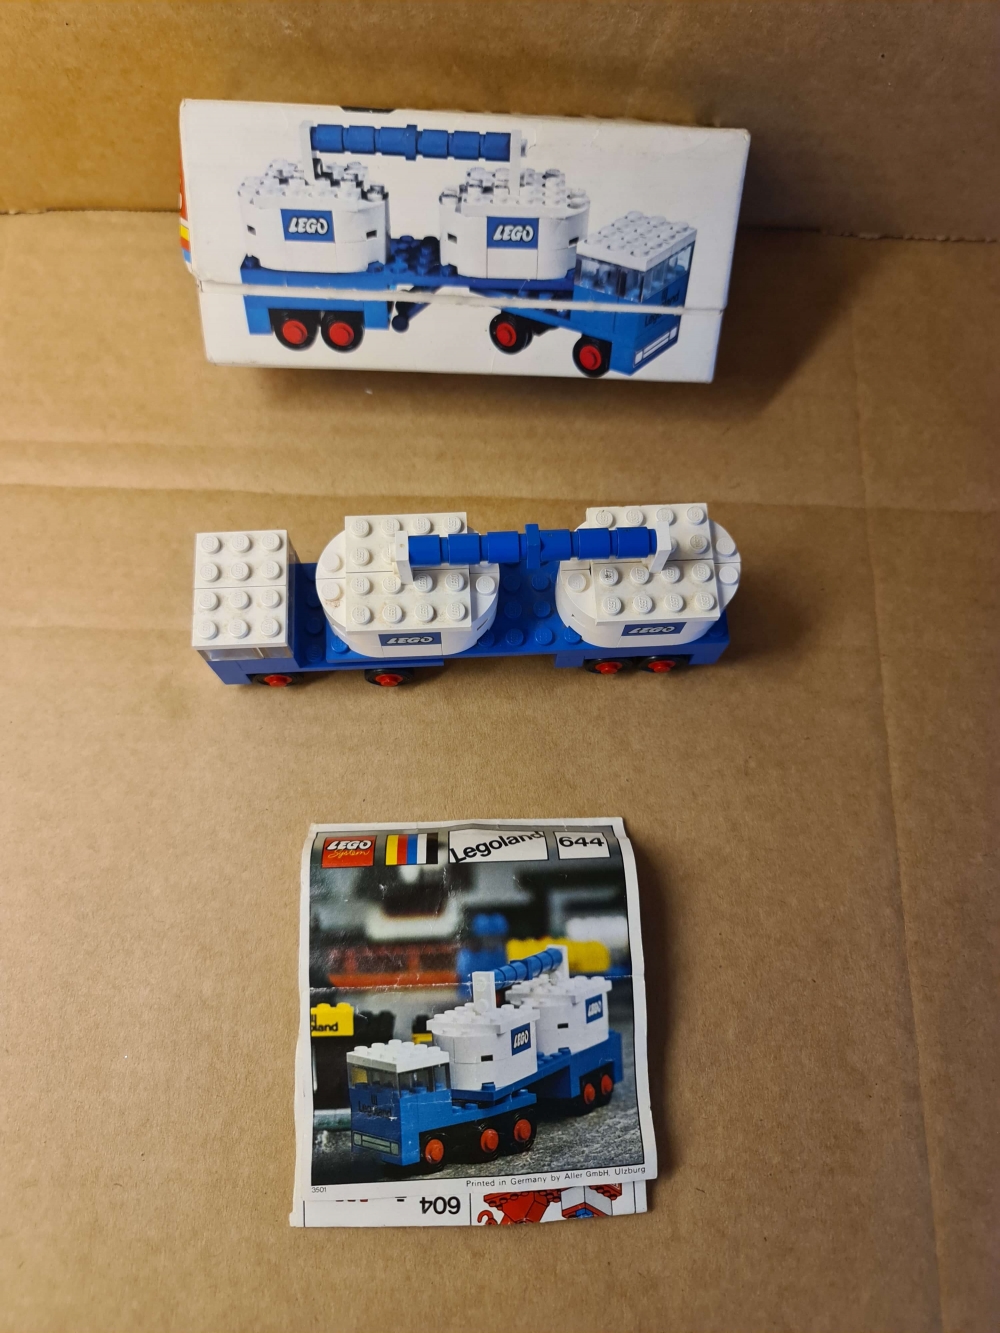 Sett 644-1 fra Lego Legoland serien.
Fint sett. Komplett med manual og eske.